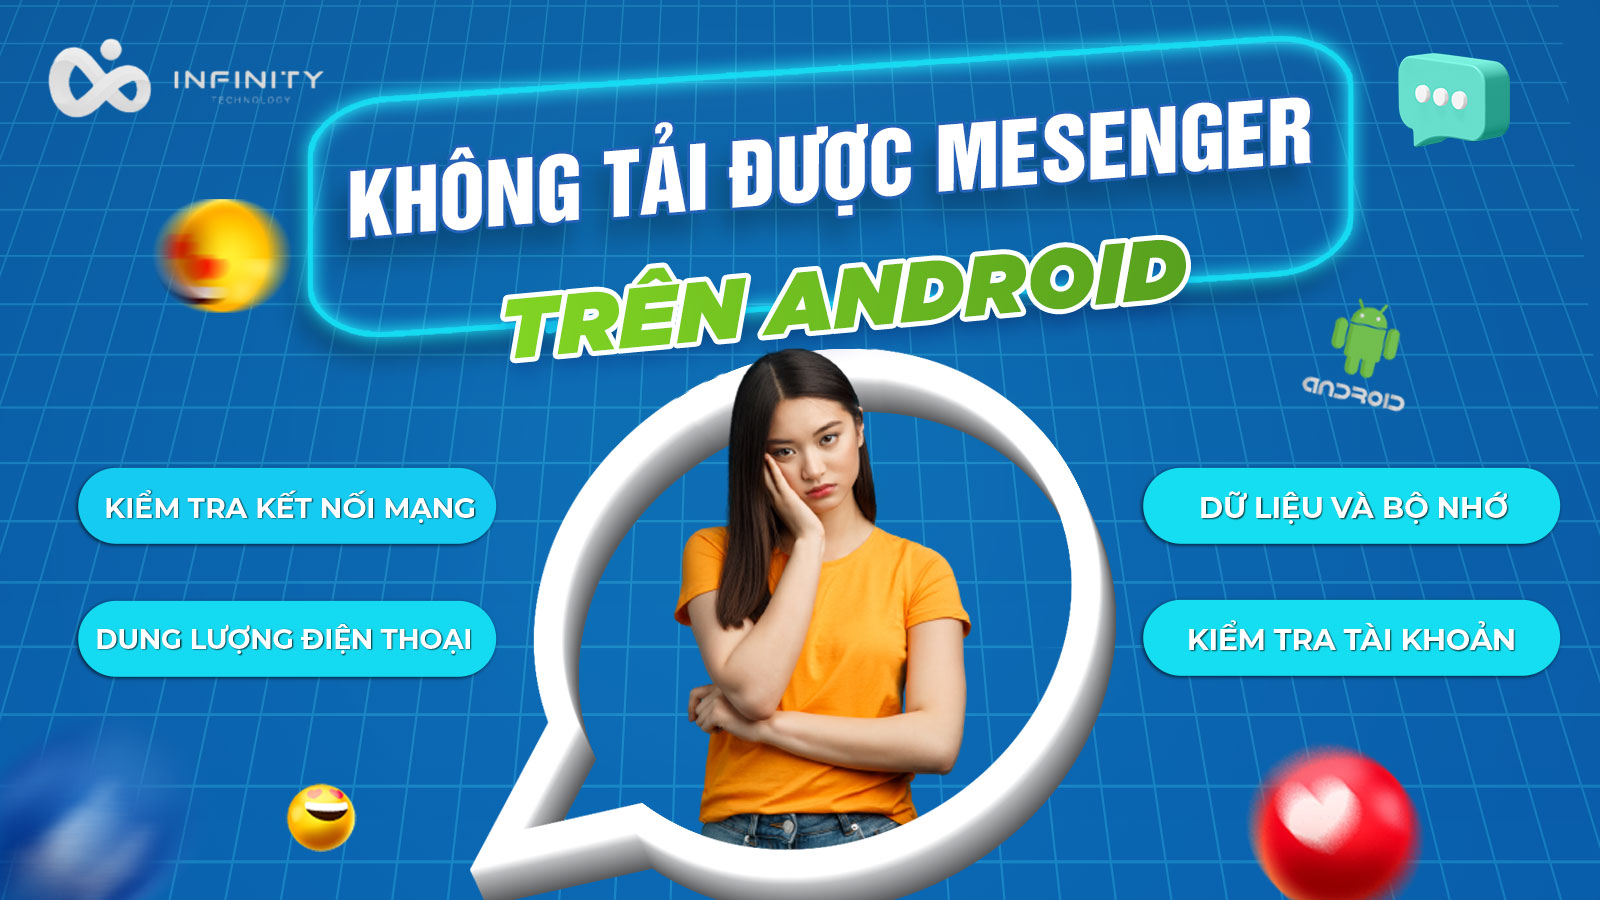 Sửa lỗi khi điện thoại Android không tải được Messenger